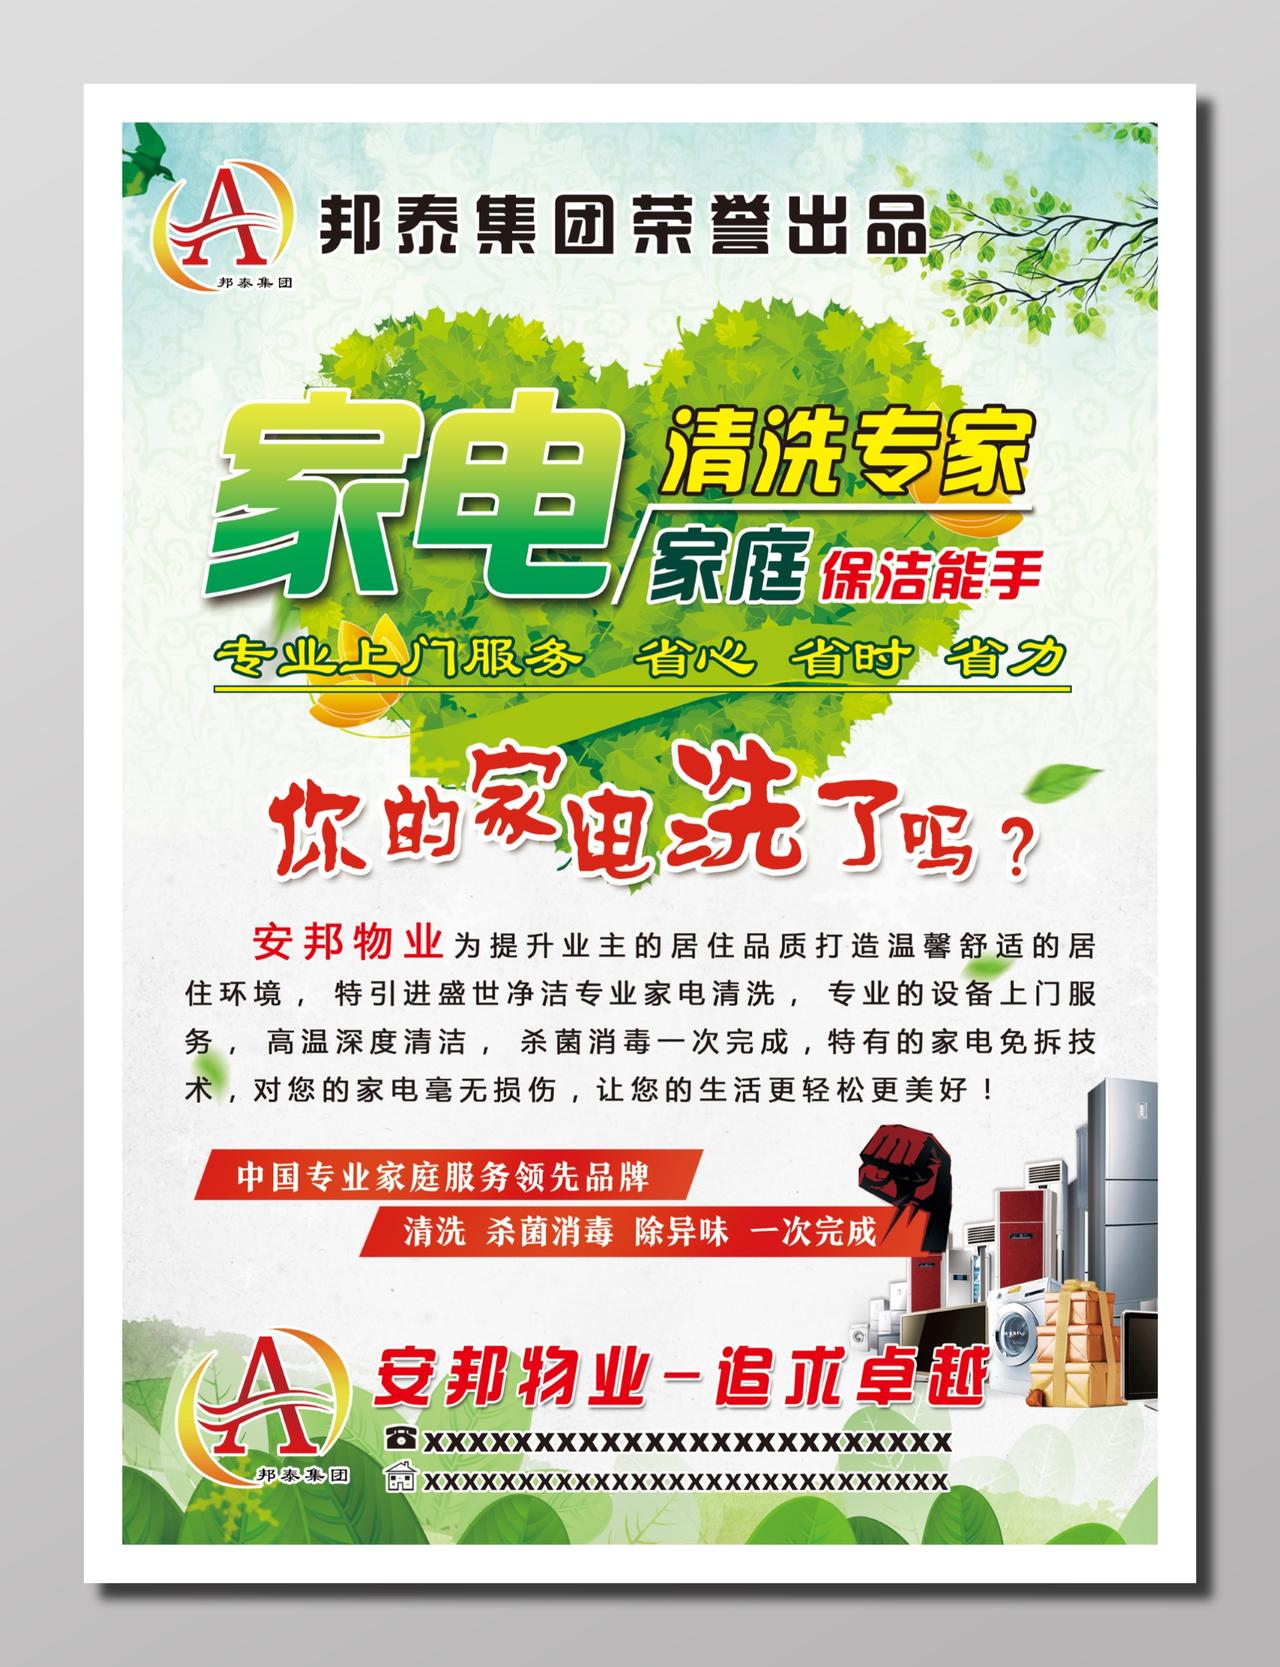 物业服务家电清洗服务宣传商品广告绿色家电清洗家庭保洁海报设计